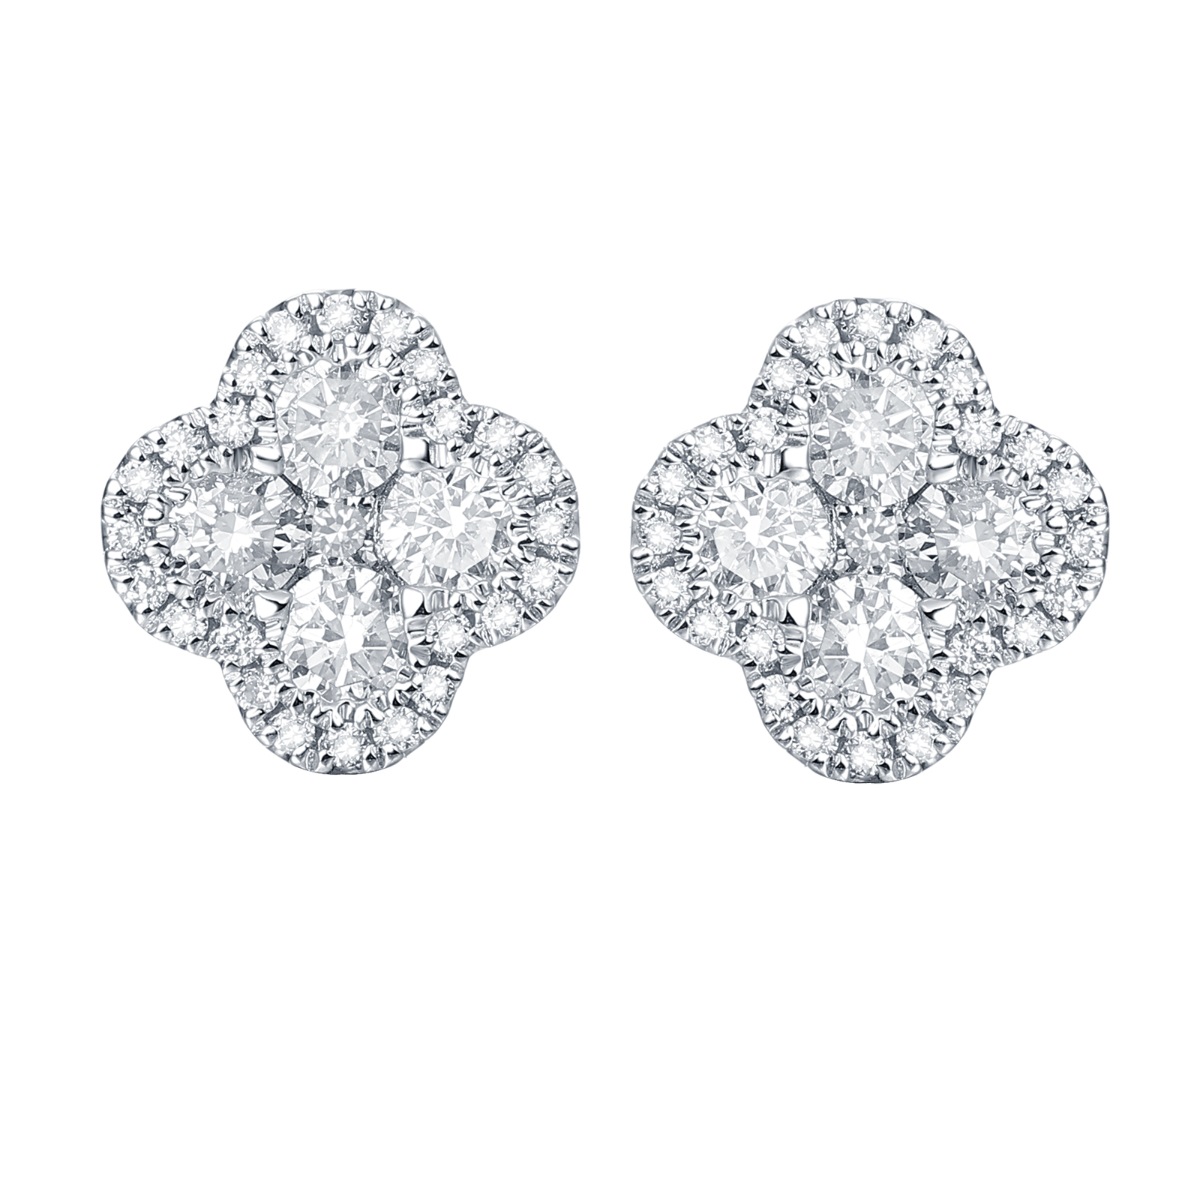 E36990WHT – 18K White Gold Diamond Earring, 0.49 TCW